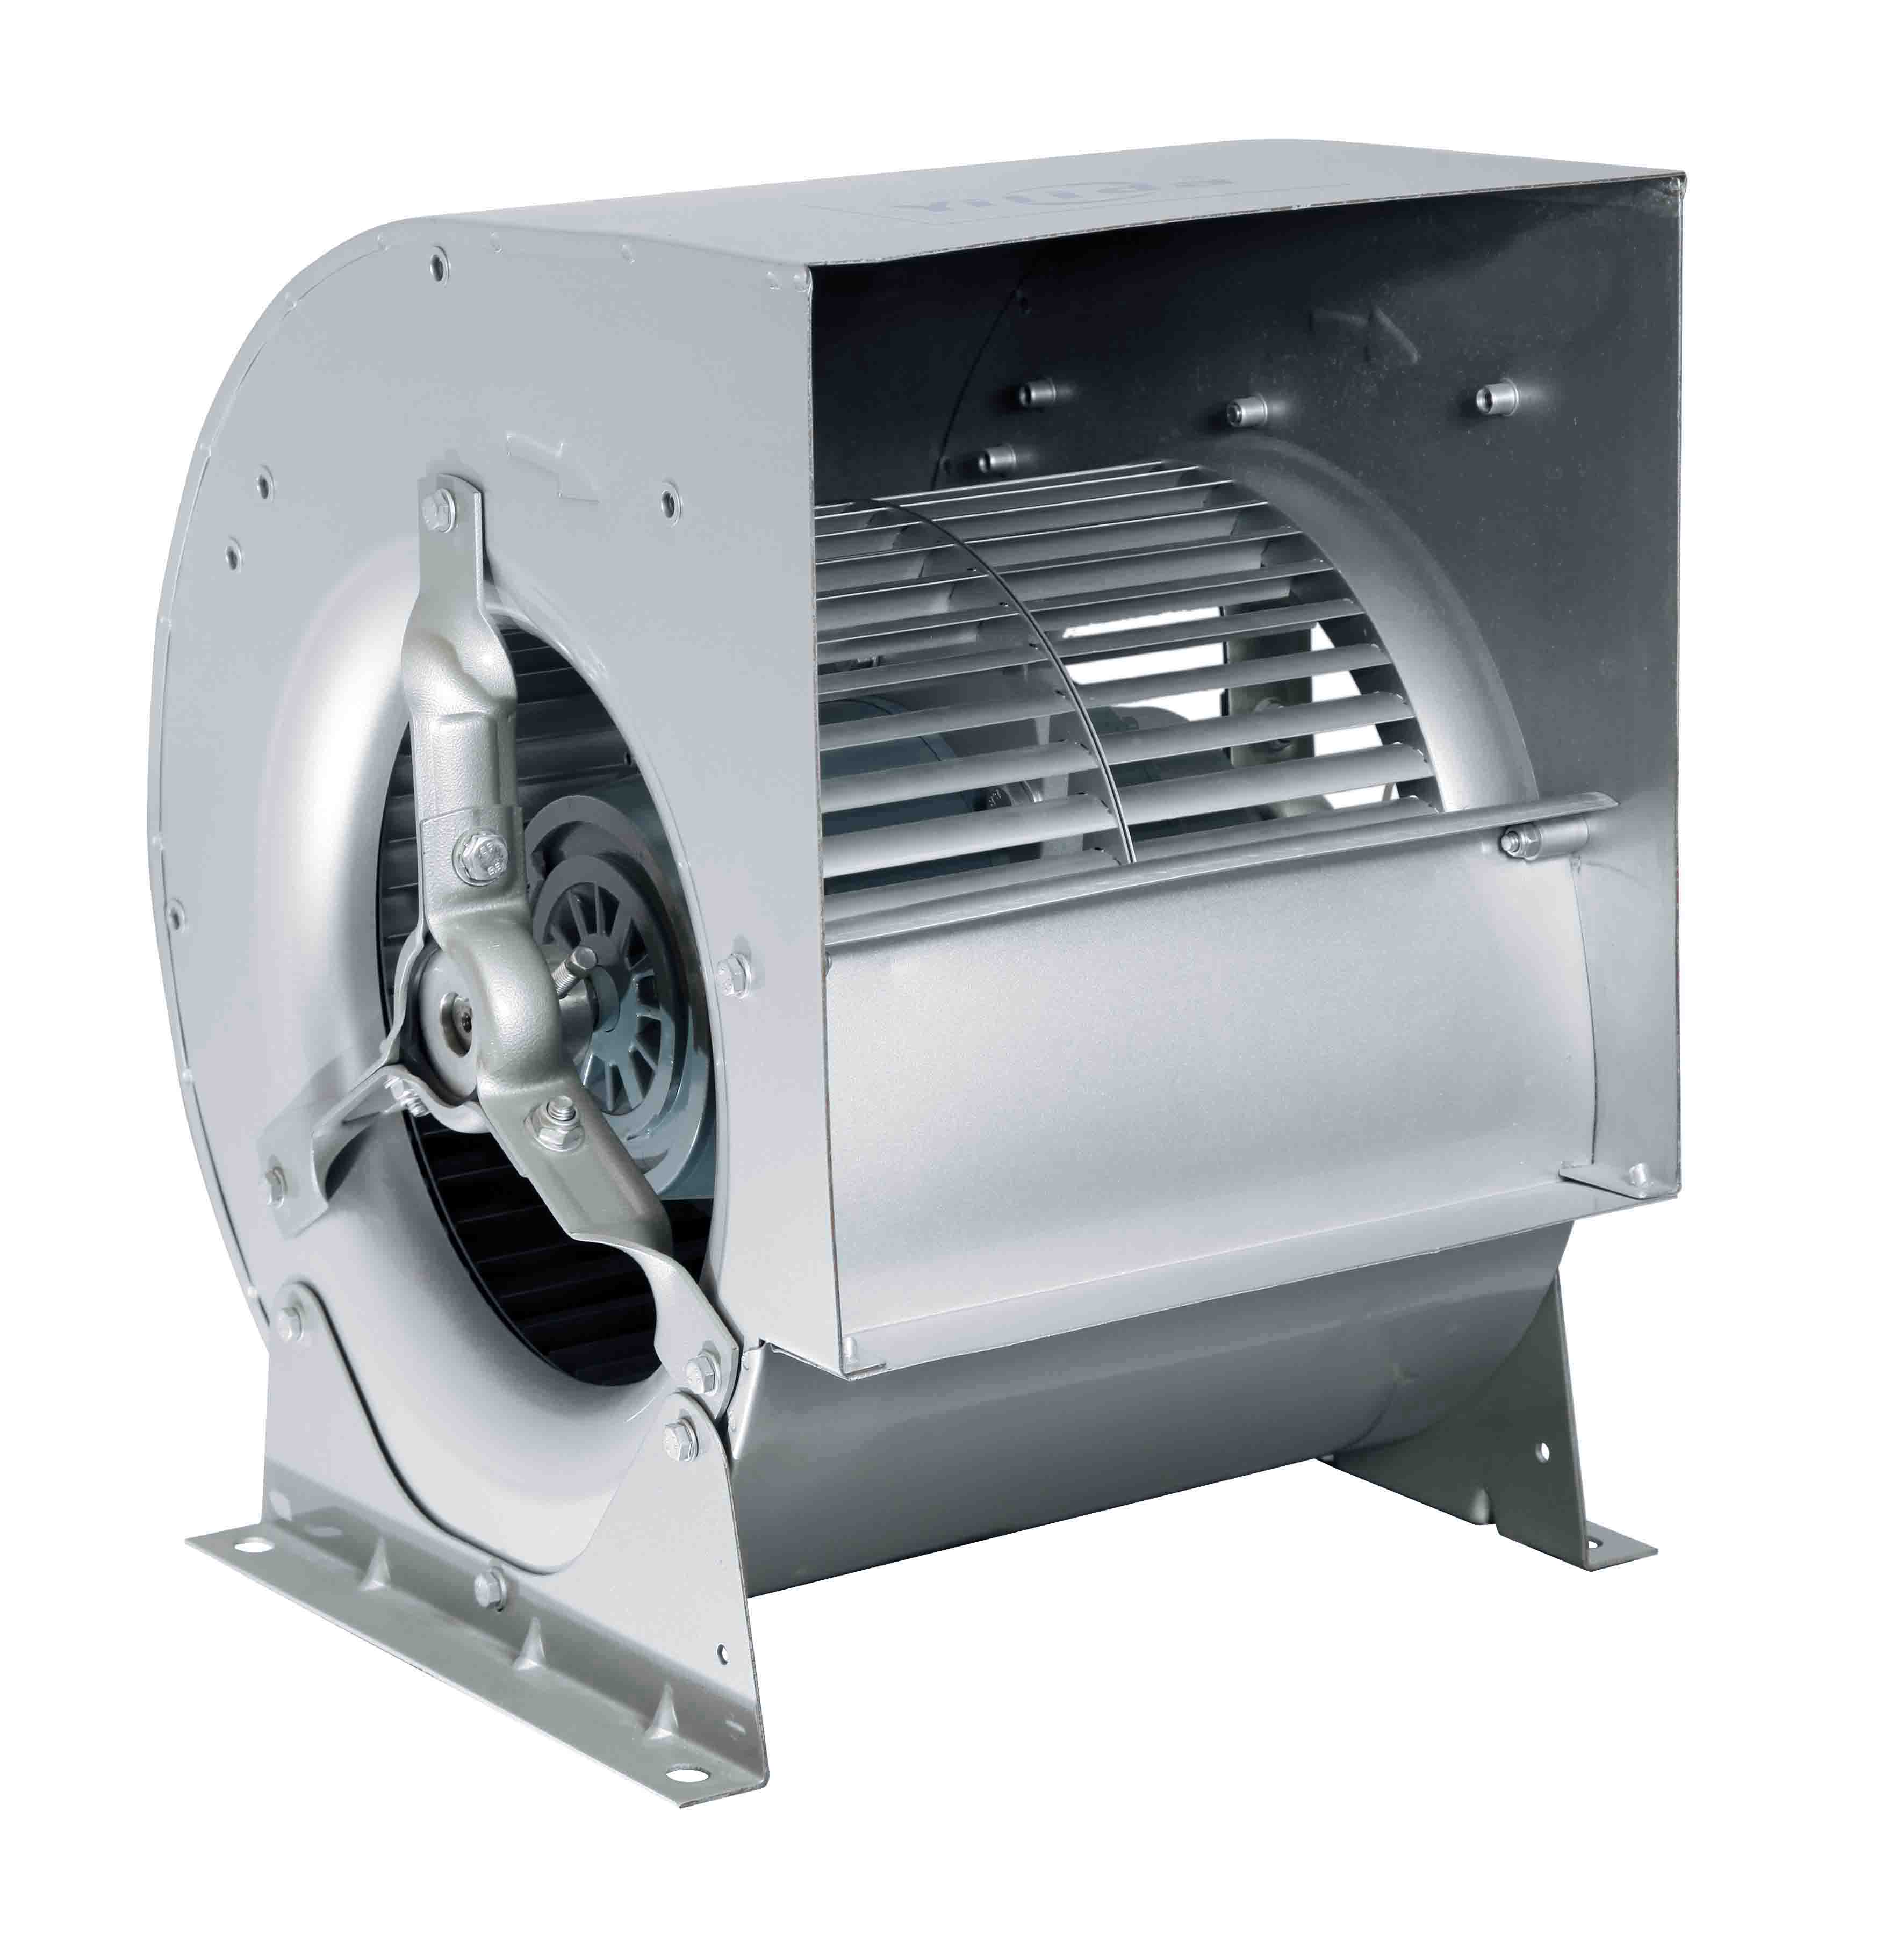 Ventiladores centrífugos para AHU, FFU, MAU, sistema HVAC Imaxe destacada